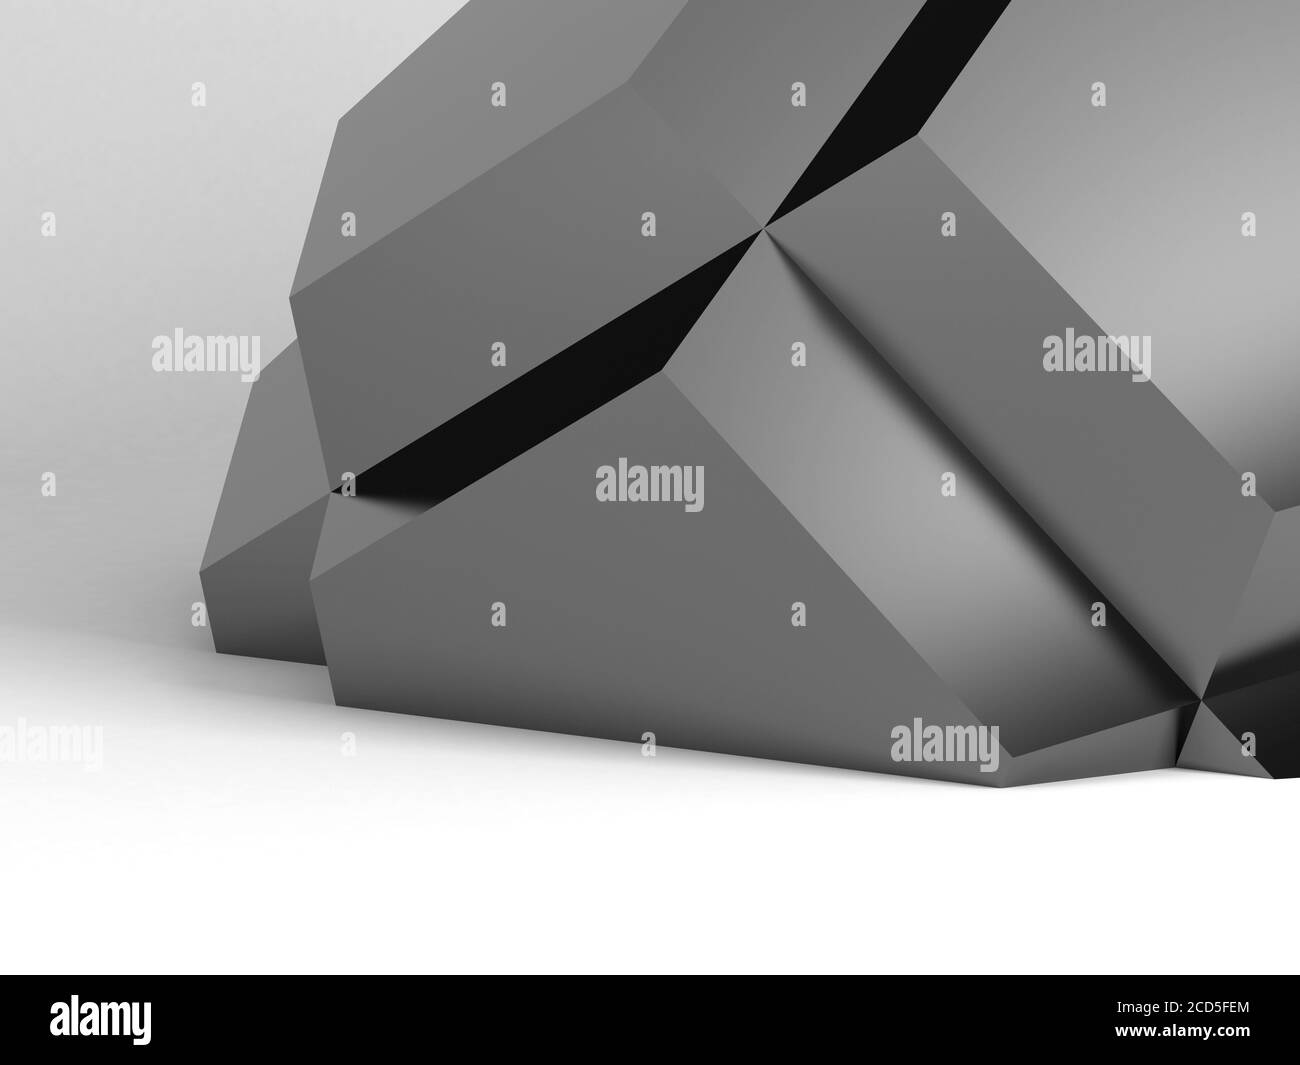 Installation géométrique abstraite noire brillante sur fond blanc avec ombre douce, illustration de rendu 3d Banque D'Images